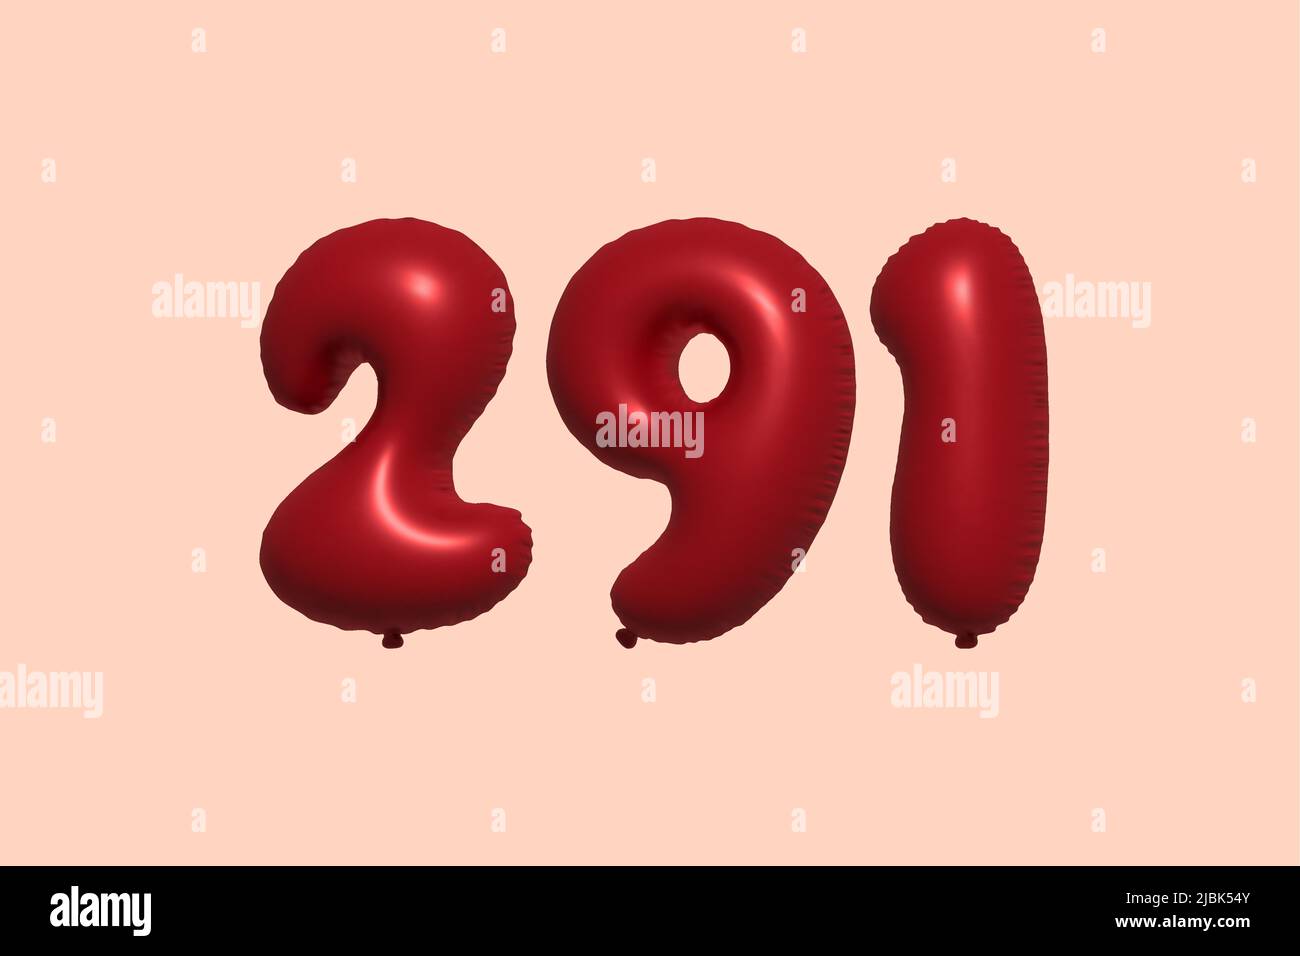 ballon à 291 3d chiffres en ballon d'air métallique réaliste rendu 3d. 3D ballons rouges à l'hélium à vendre décoration Fête anniversaire, célébration anniversaire, mariage vacances. Illustration vectorielle Illustration de Vecteur